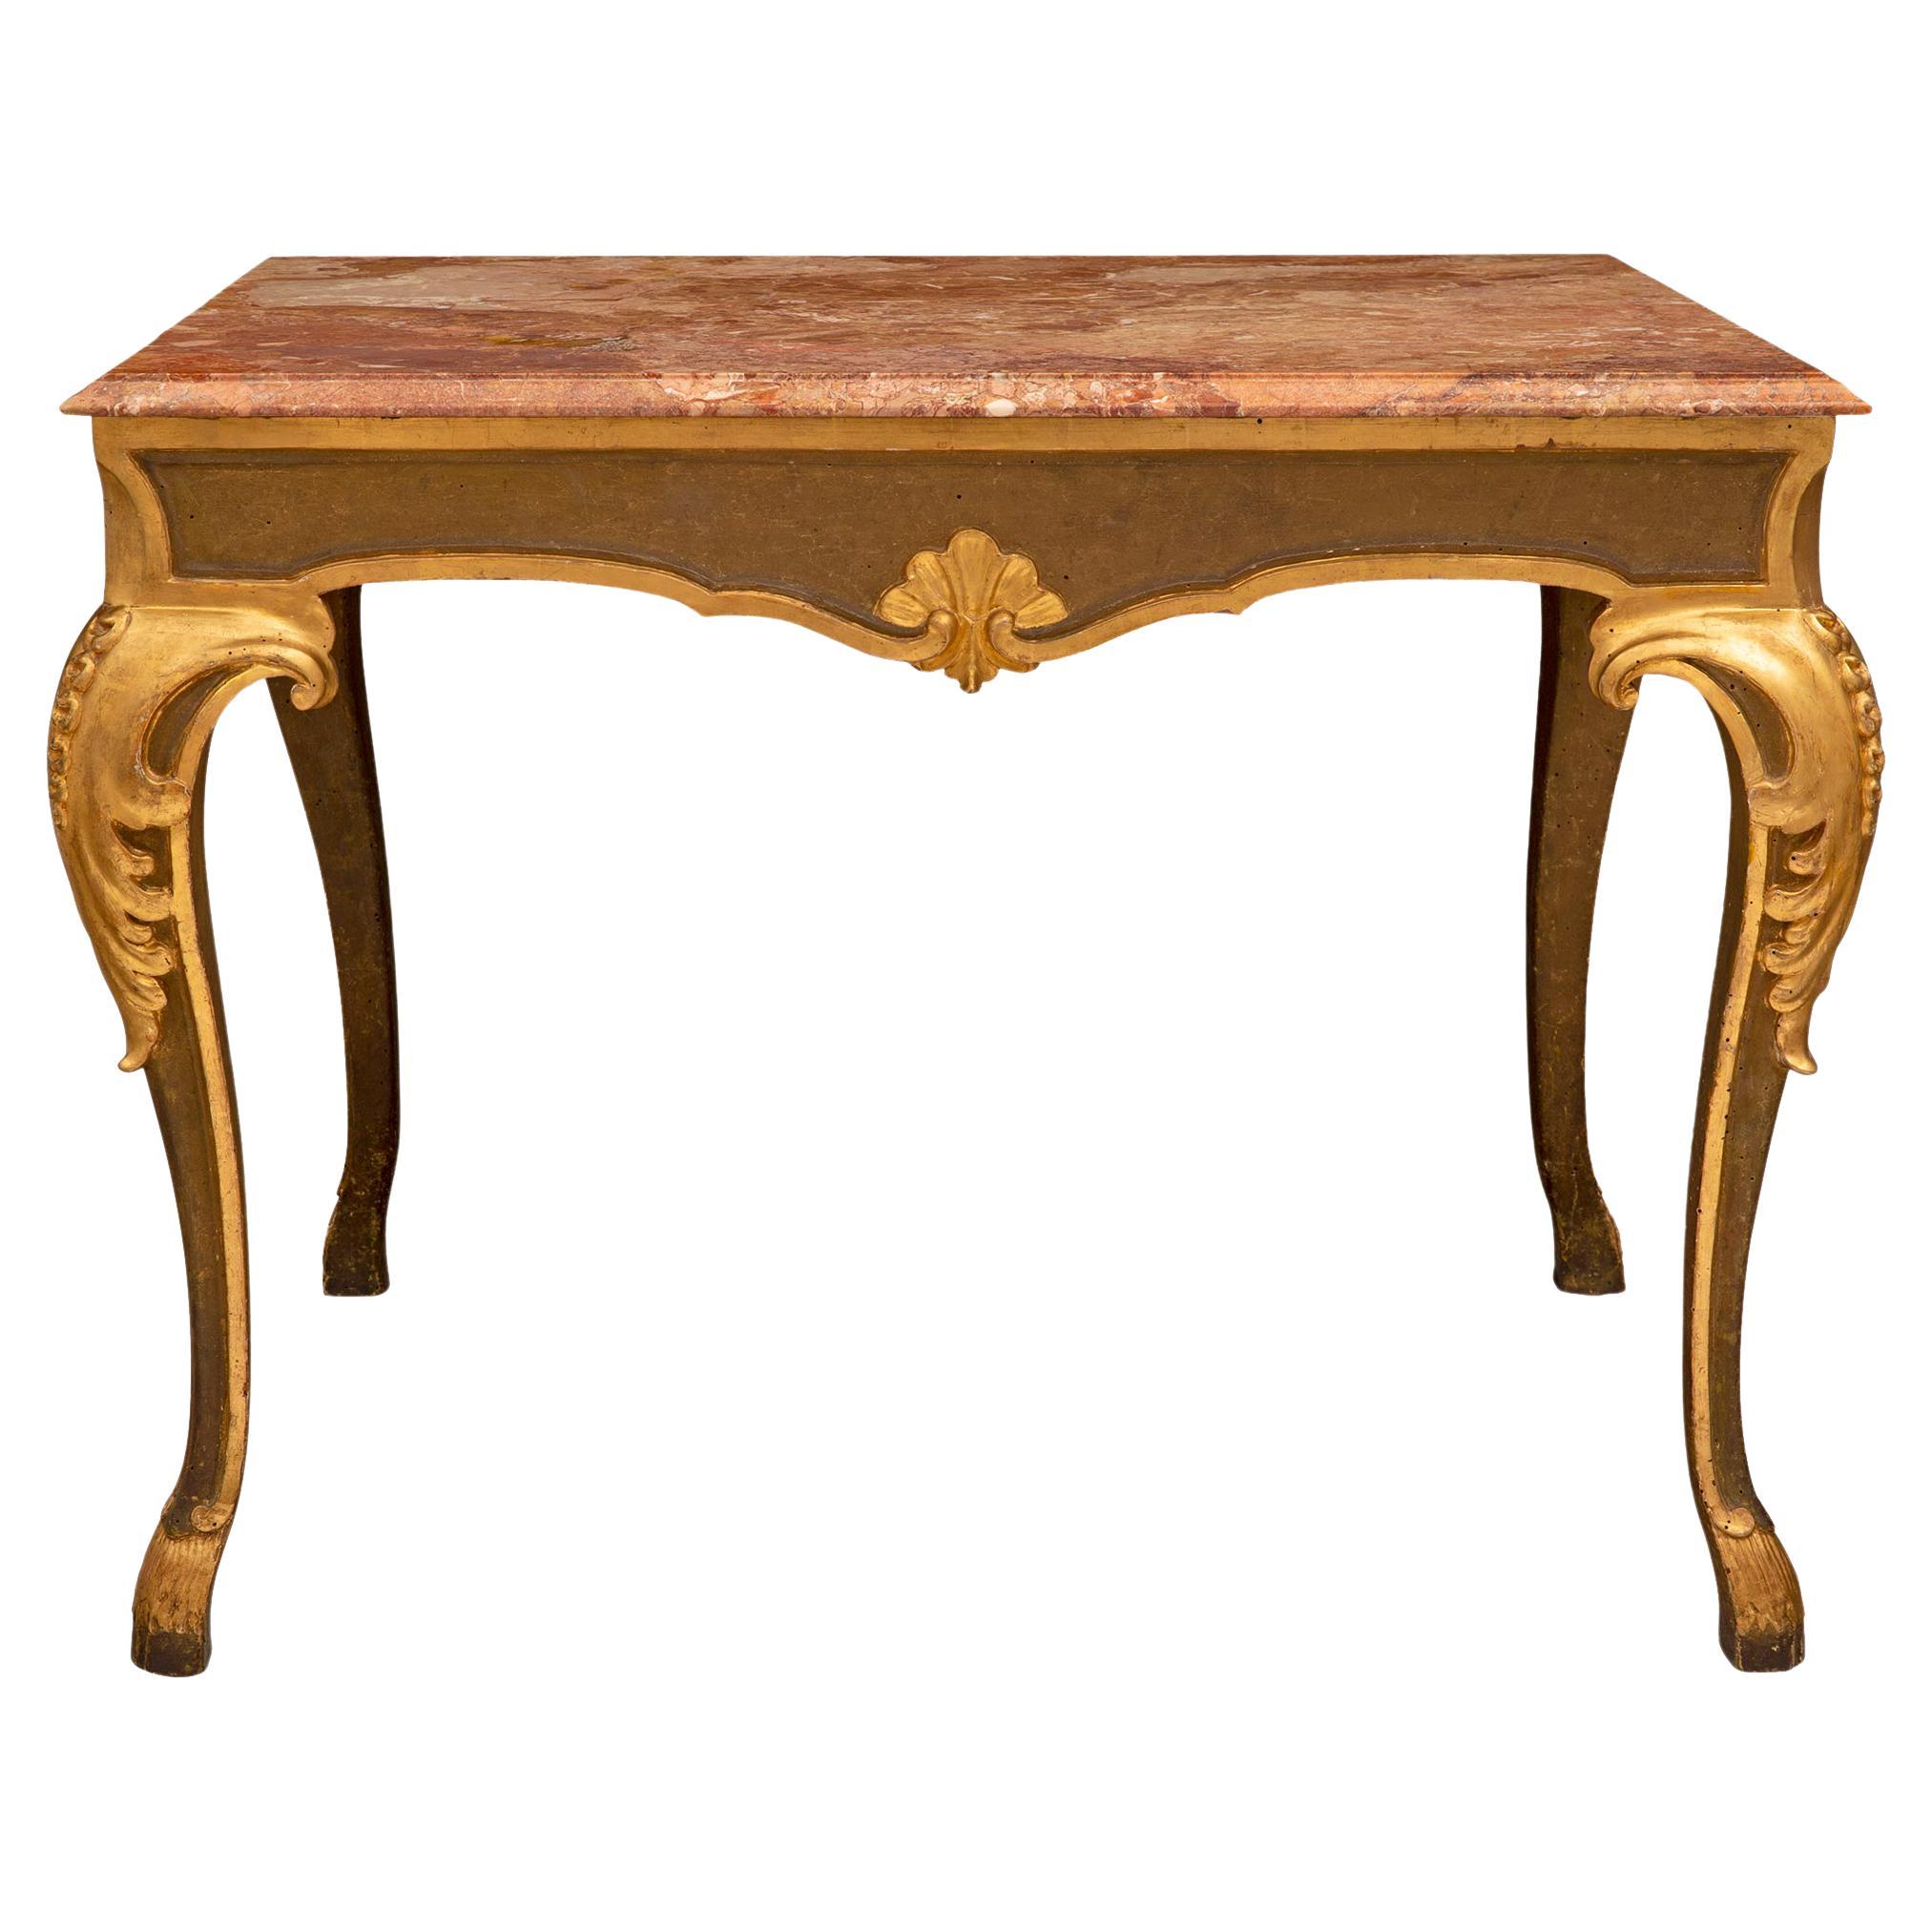 Table centrale italienne d'époque Louis XV du 18ème siècle en bois polychrome et doré